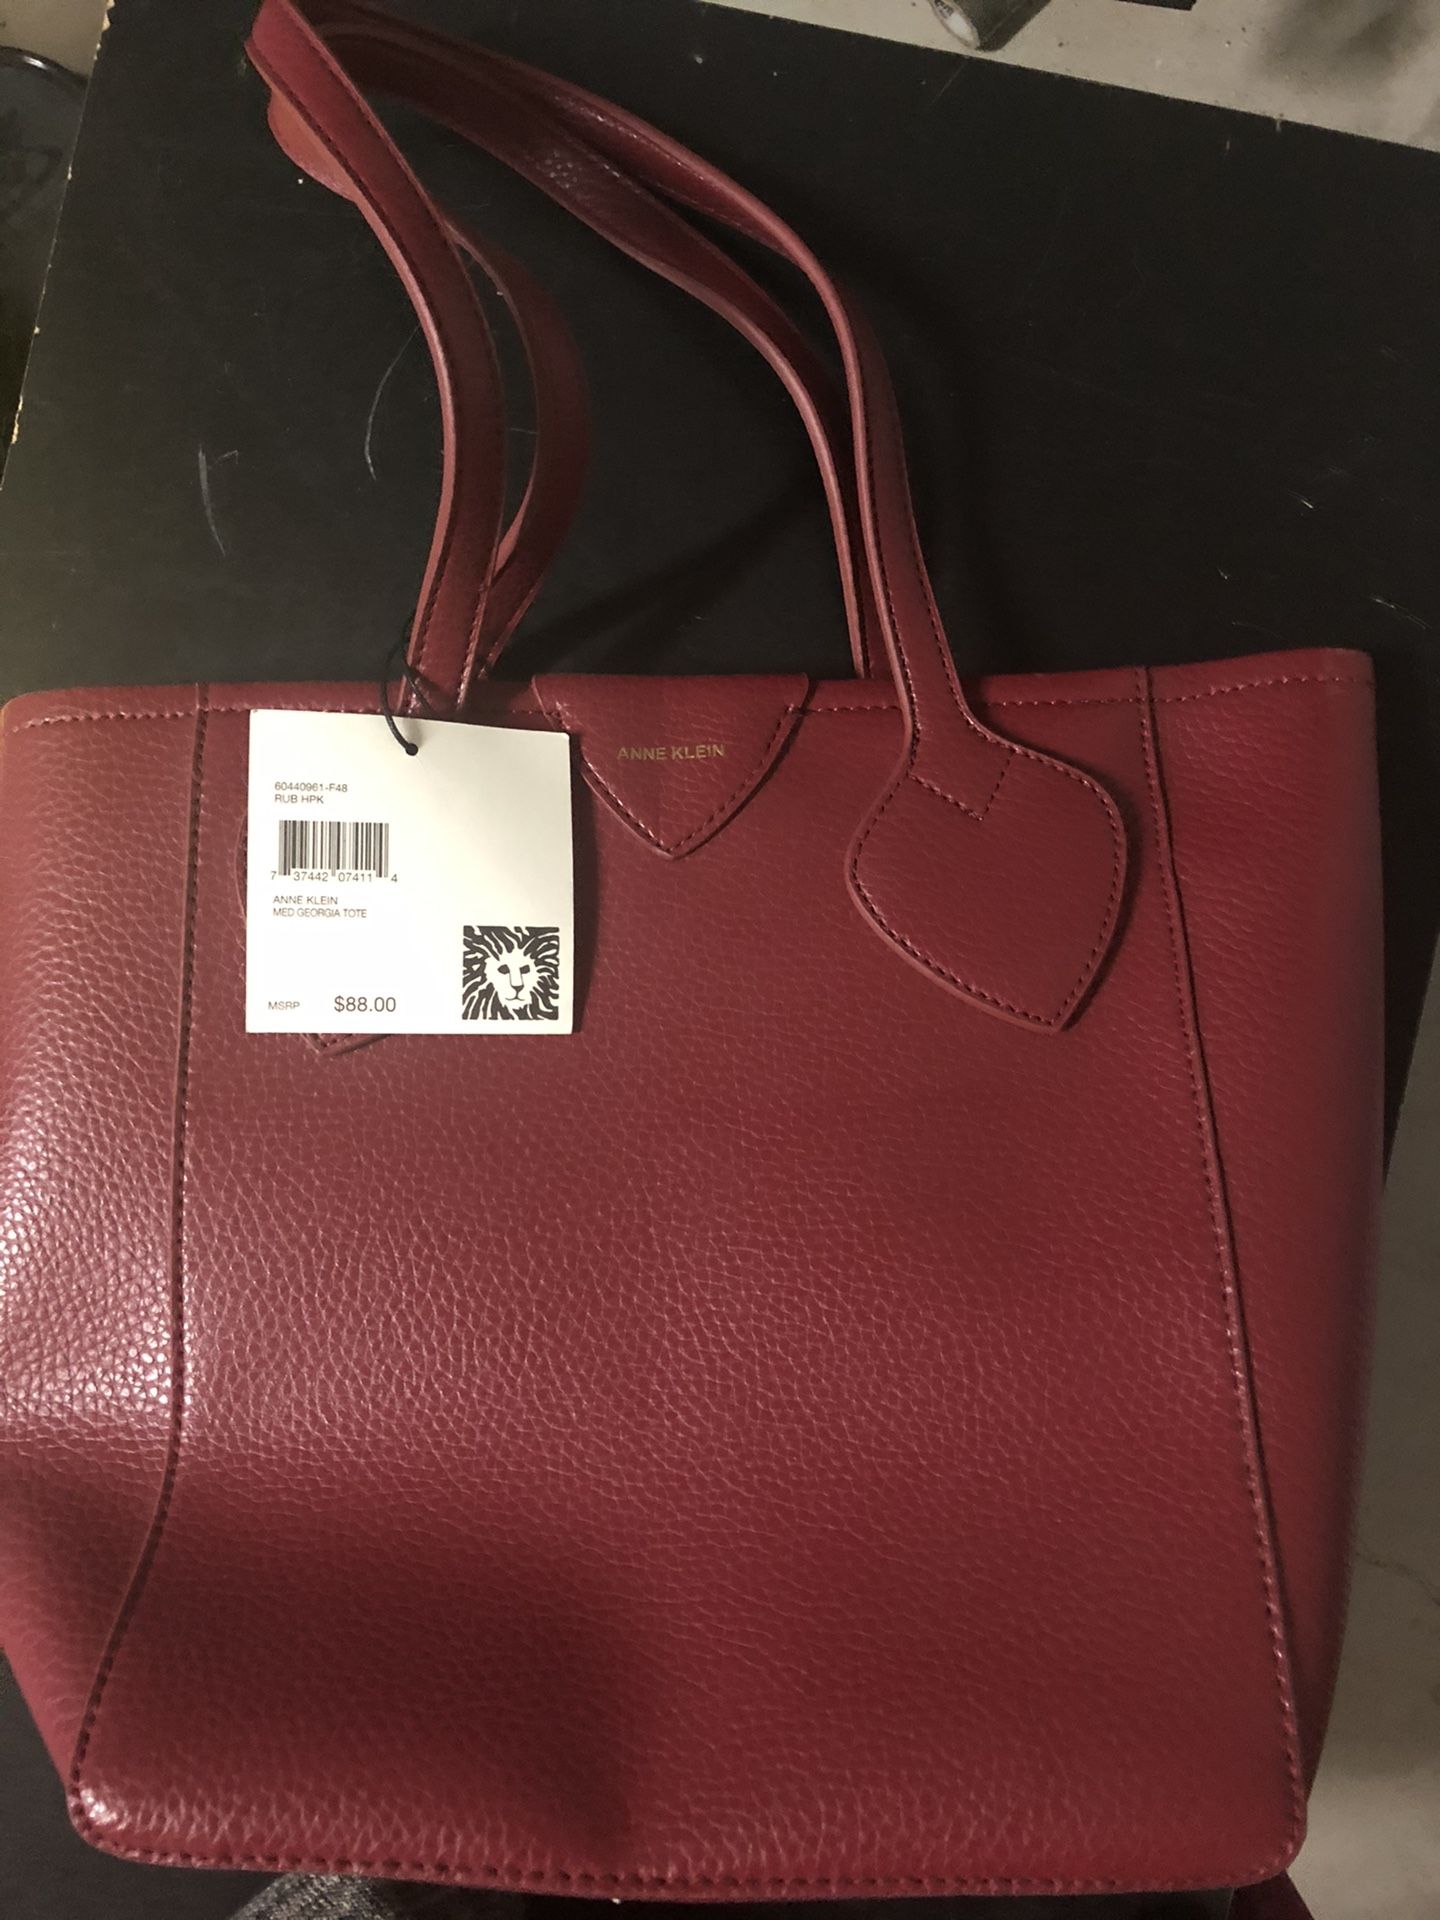 New Anne Klein purse